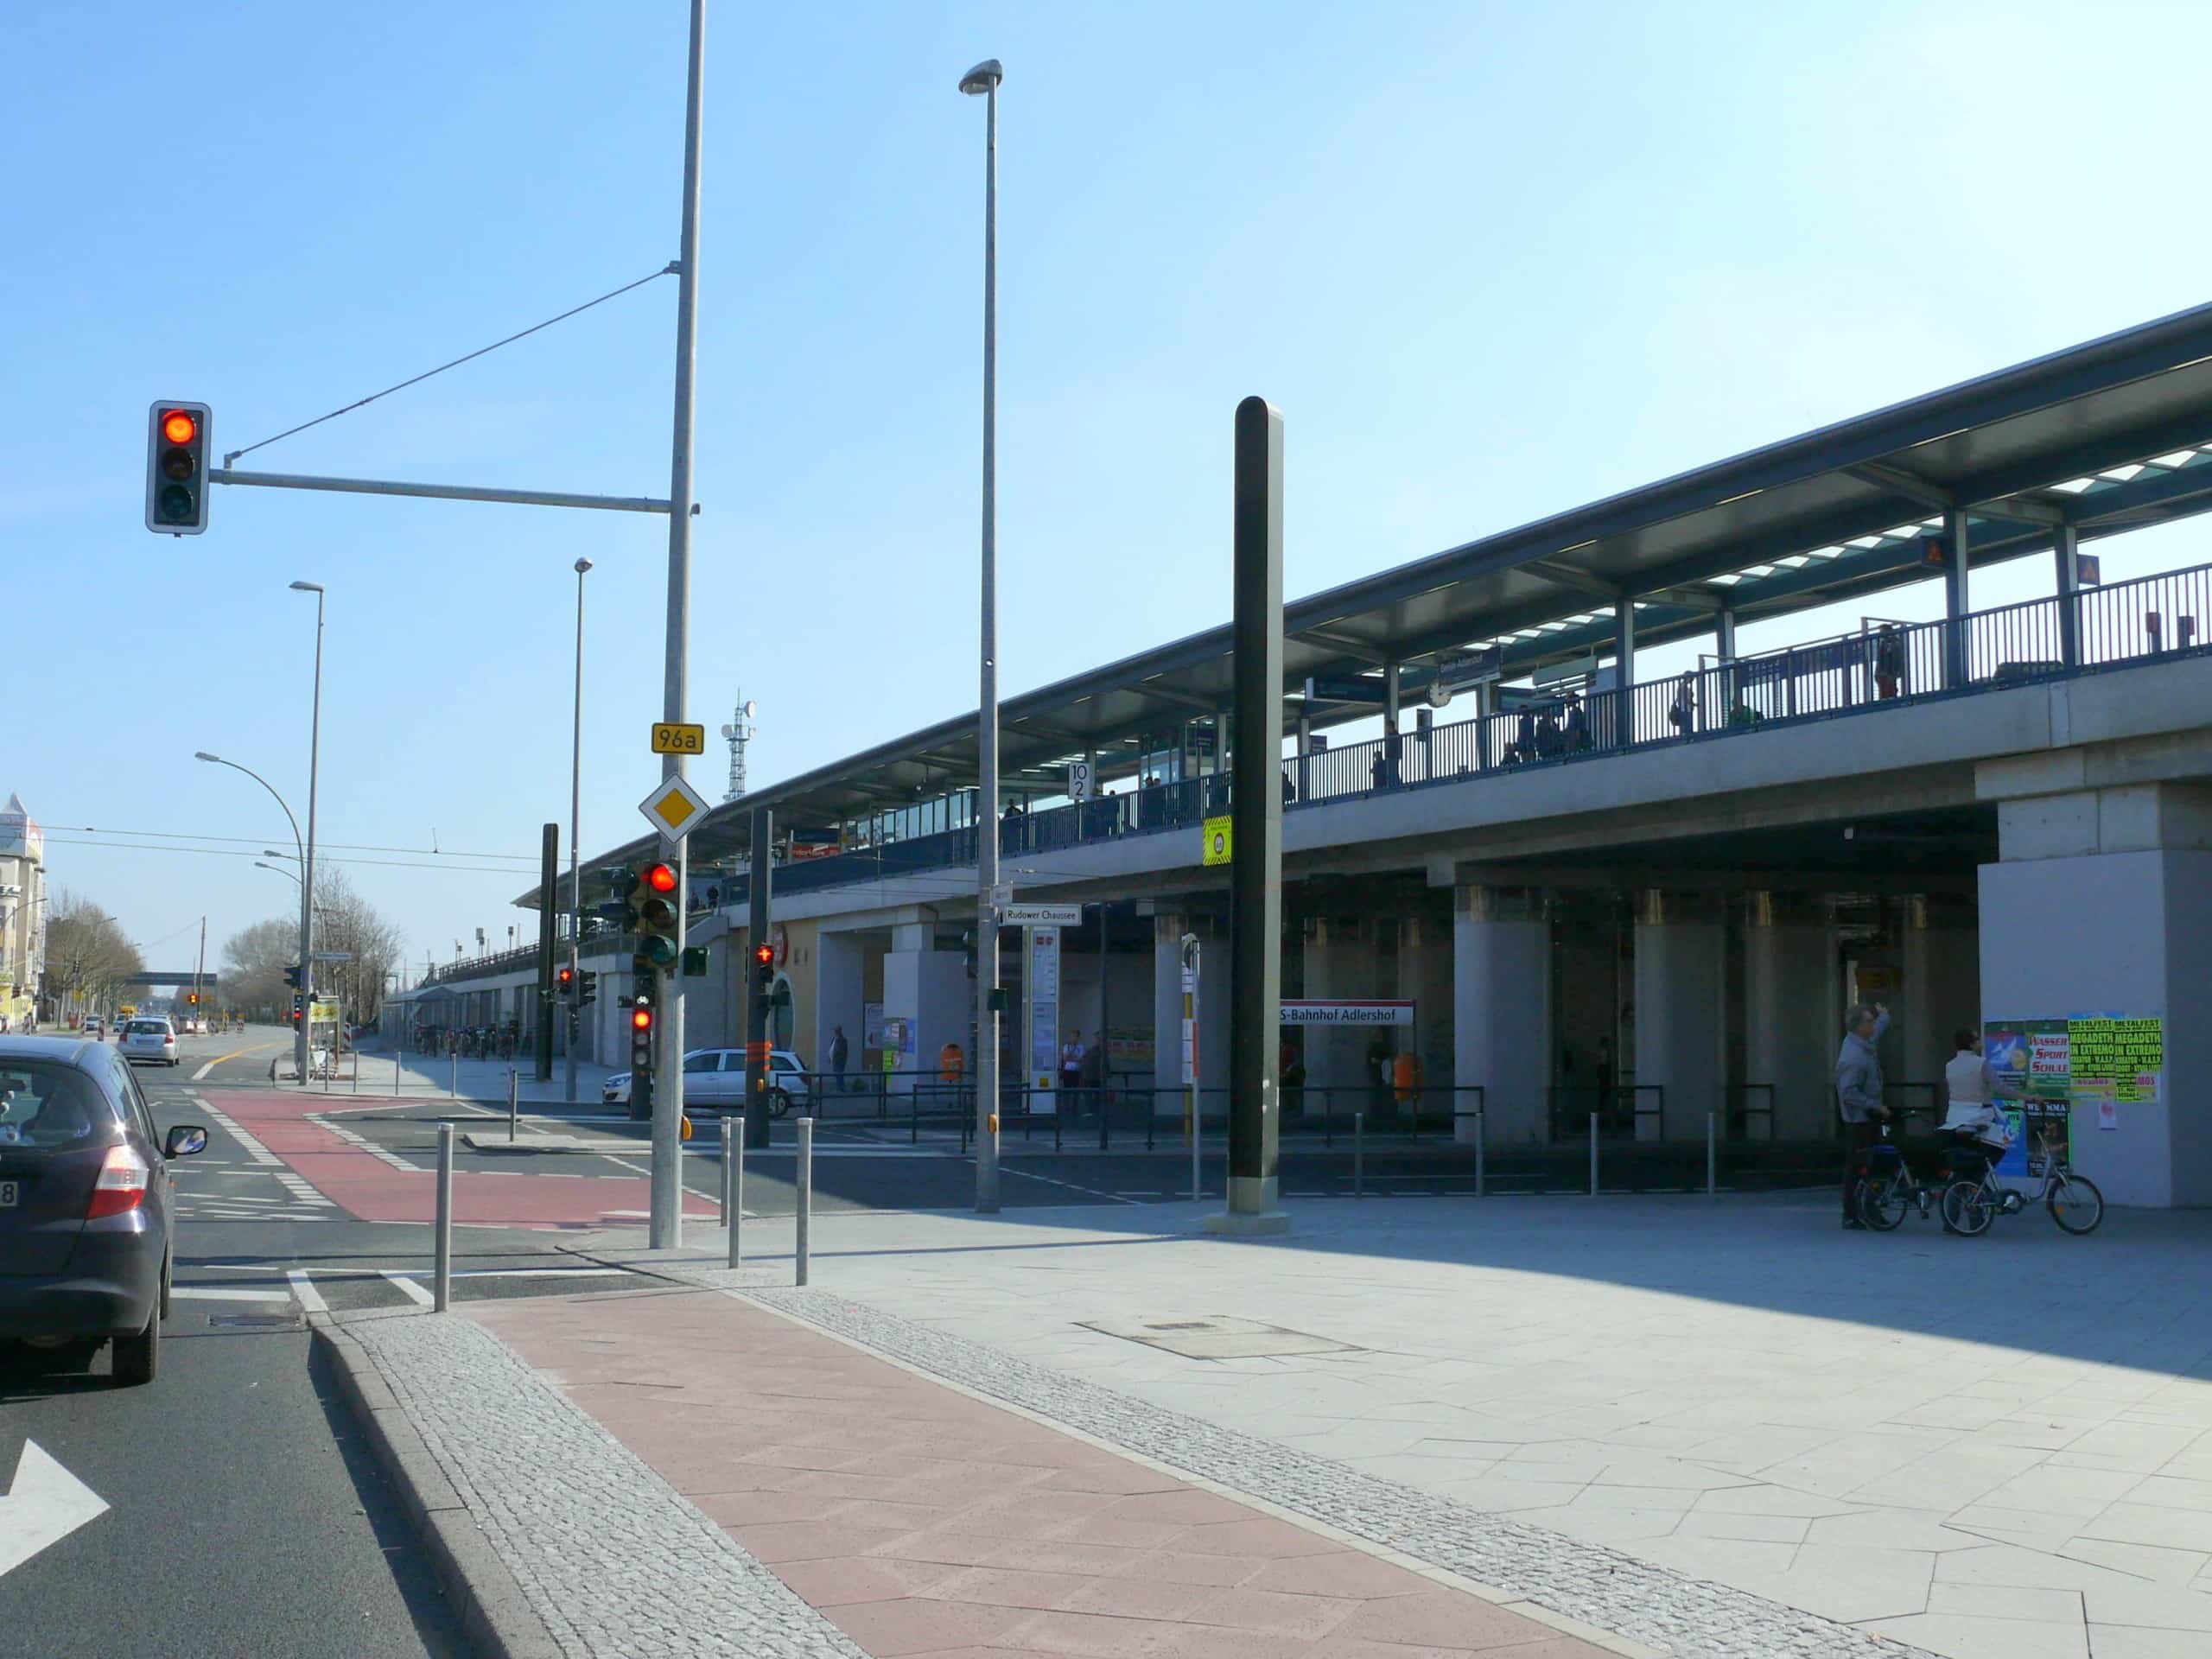 Der Bahnhof Adlershof liegt am Adlergestell und ist ein wichtiger Verkehrsknotenpunkt für den Südosten der Stadt. Bildquelle: Fridolin freudenfett (Peter Kuley), CC BY-SA 3.0 , via Wikimedia Commons